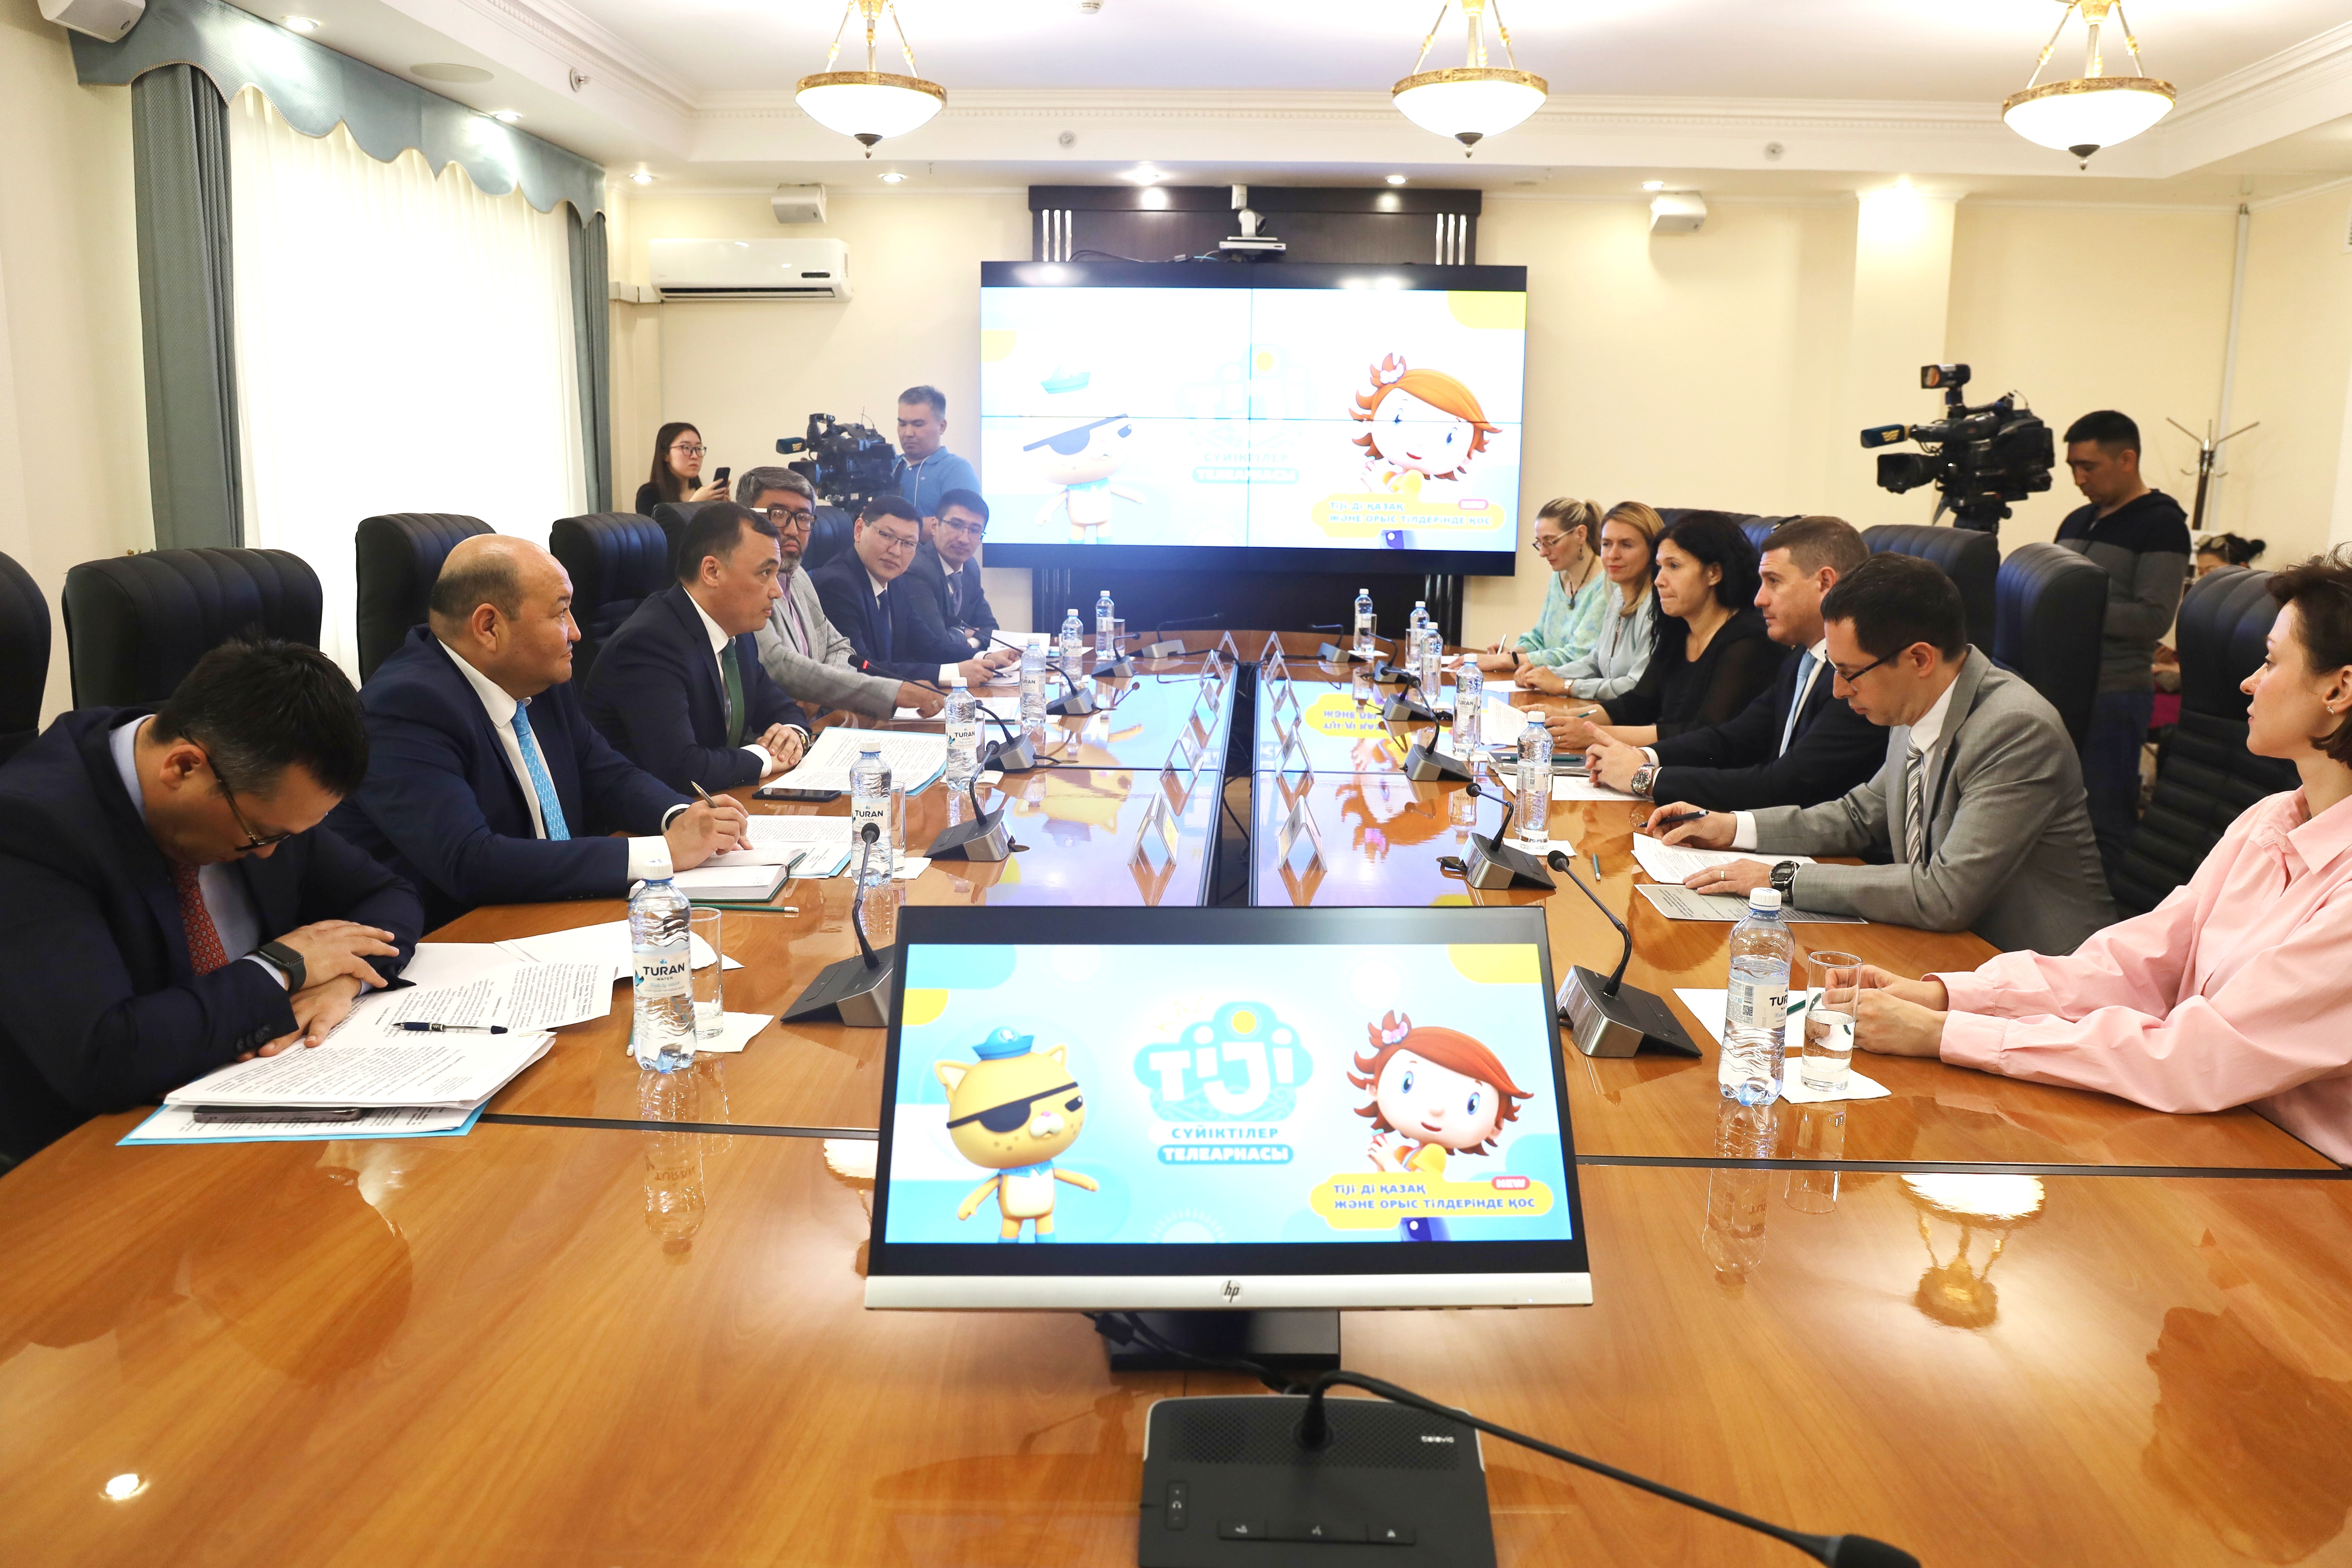 В Год детей герои мультфильмов TiJi заговорили на казахском языке 